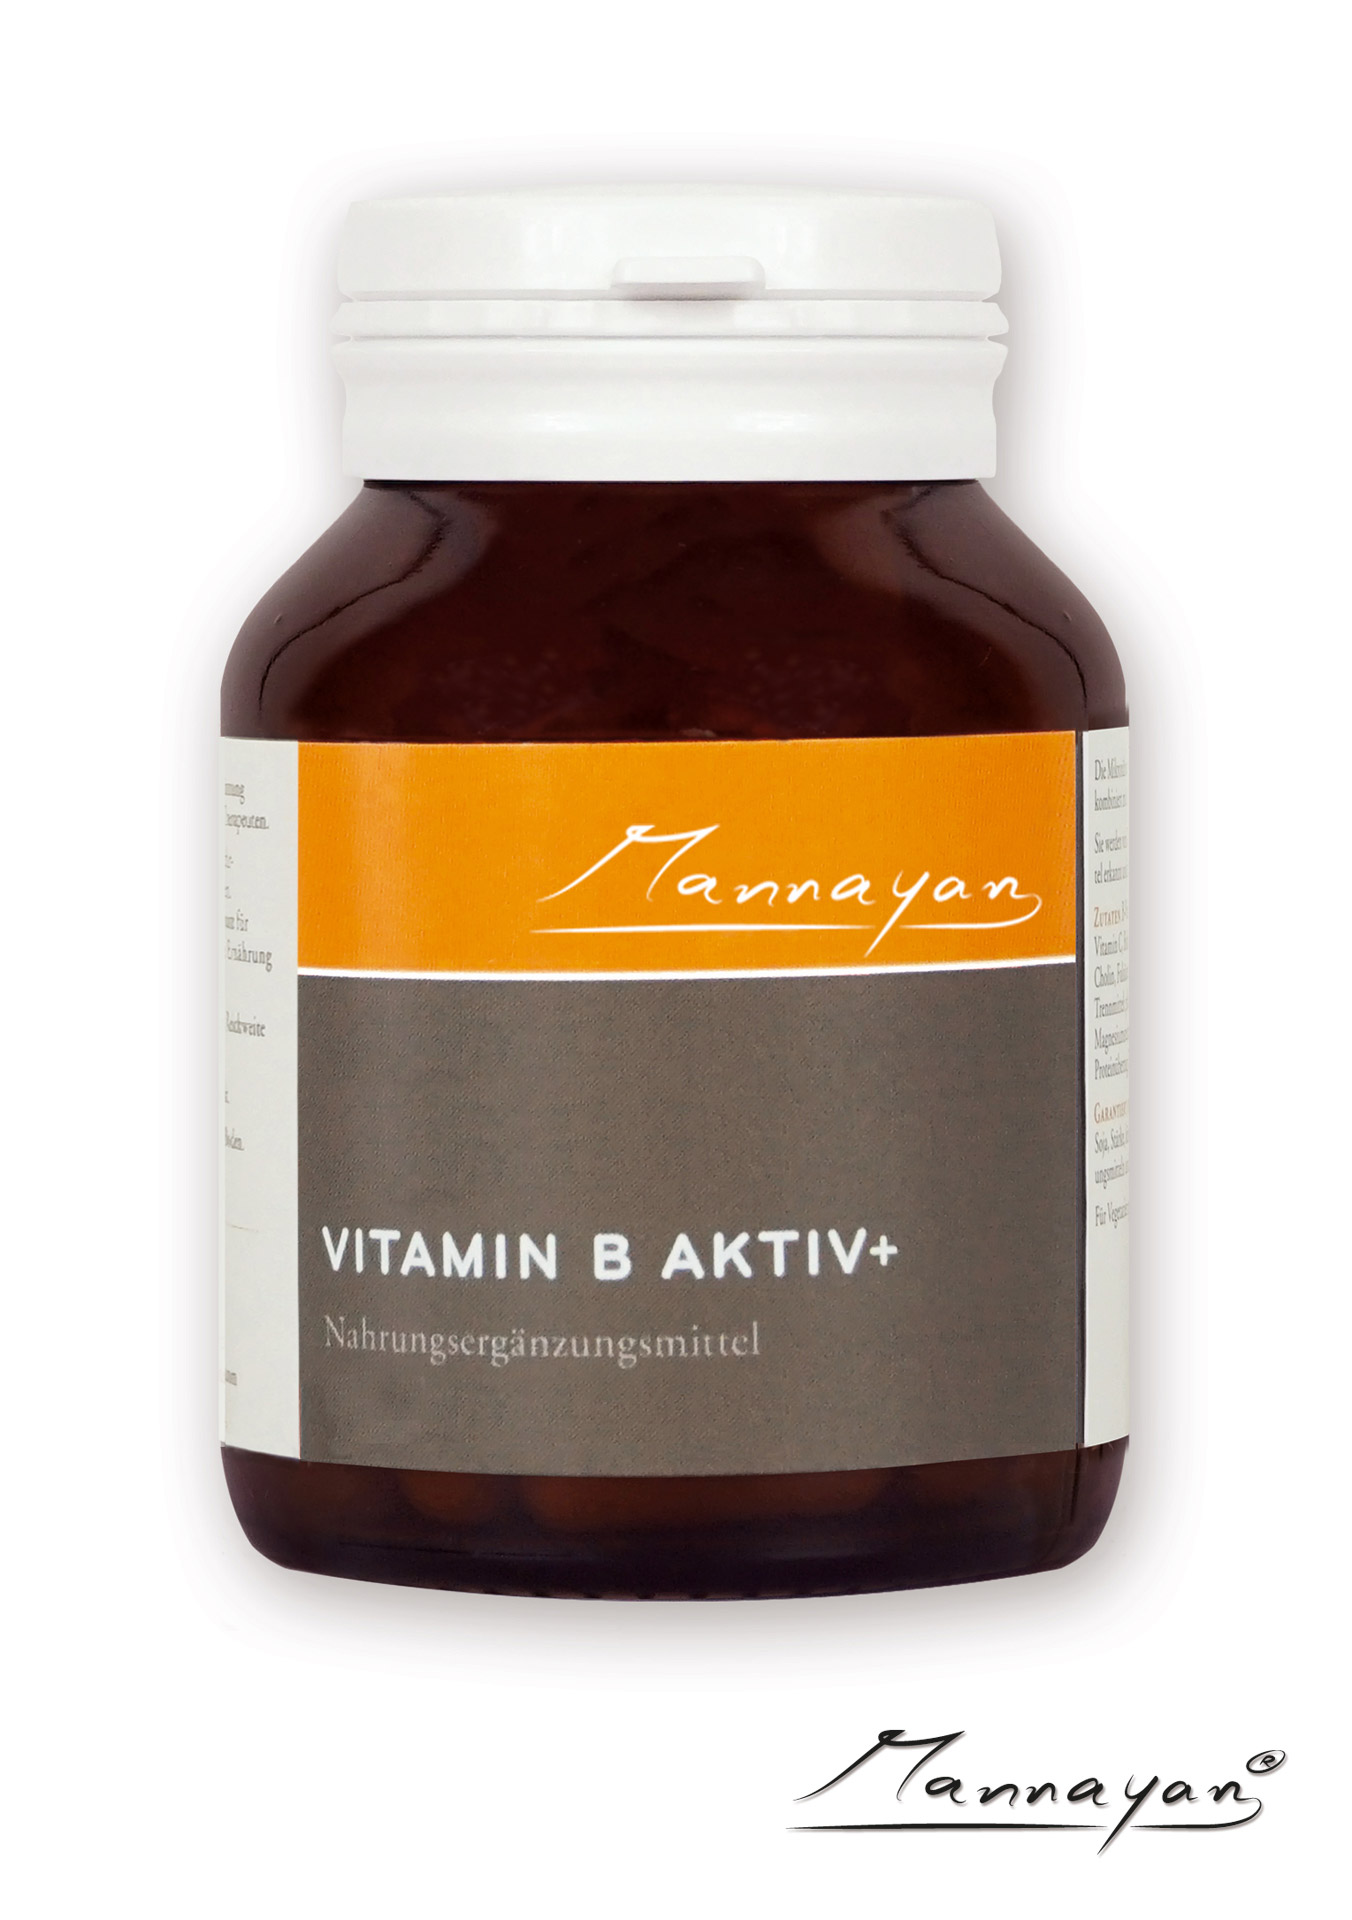 Vitamin B Aktiv+ von Mannayan